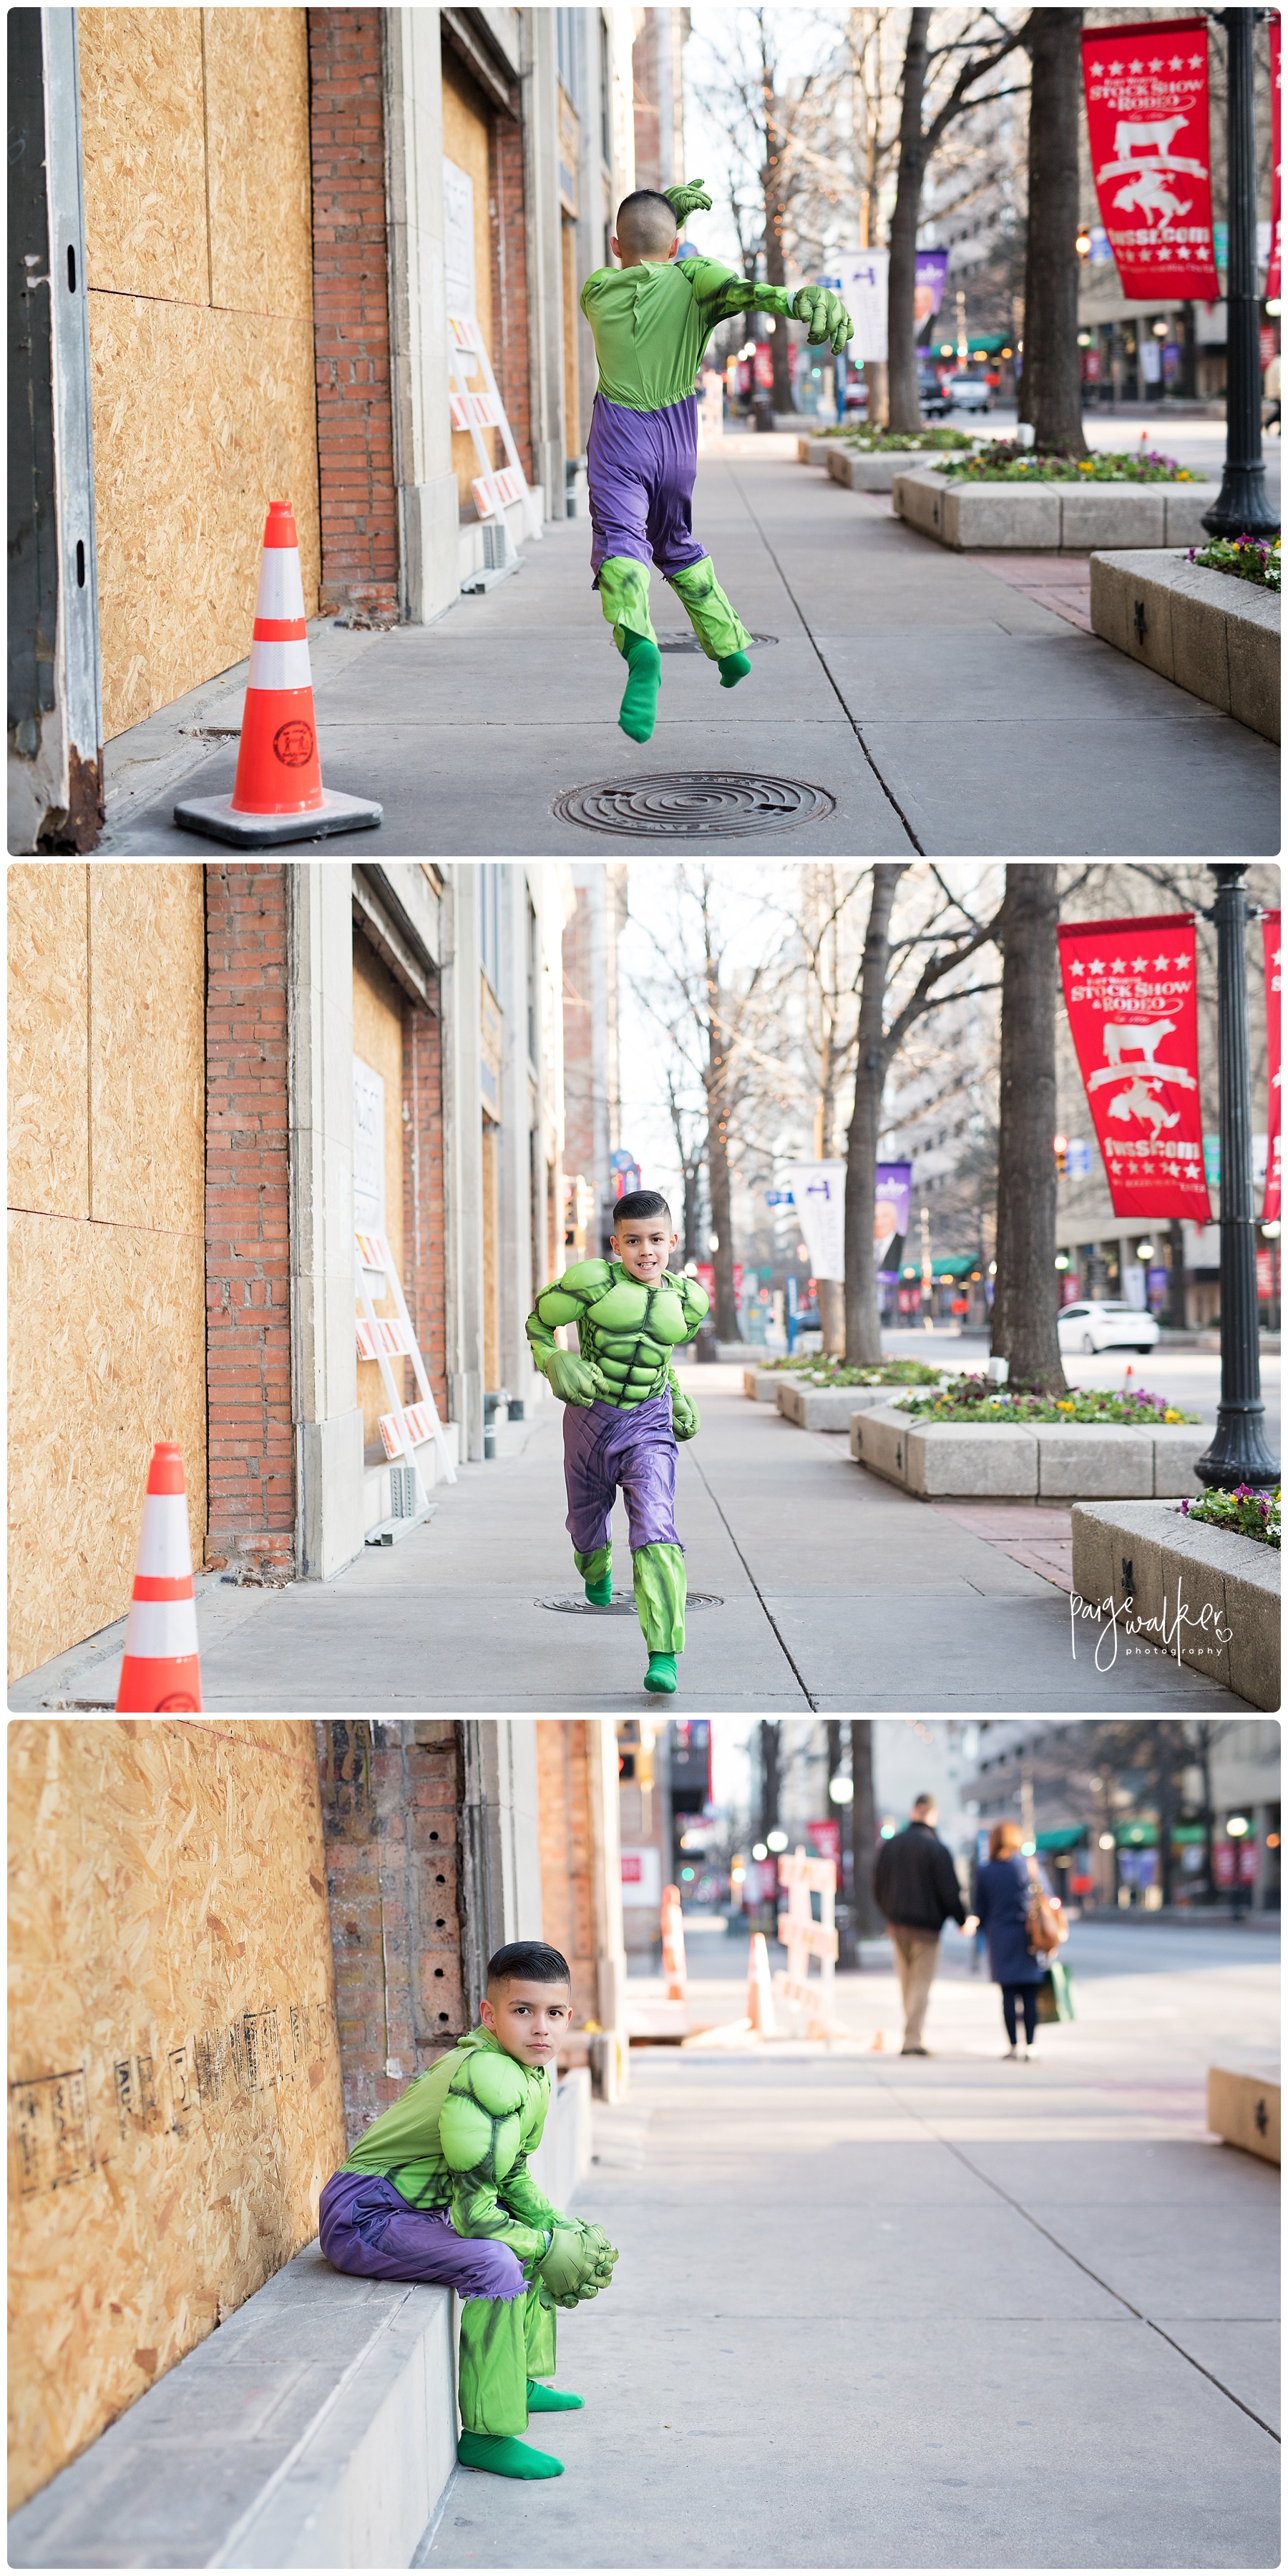 The Hulk running through the city